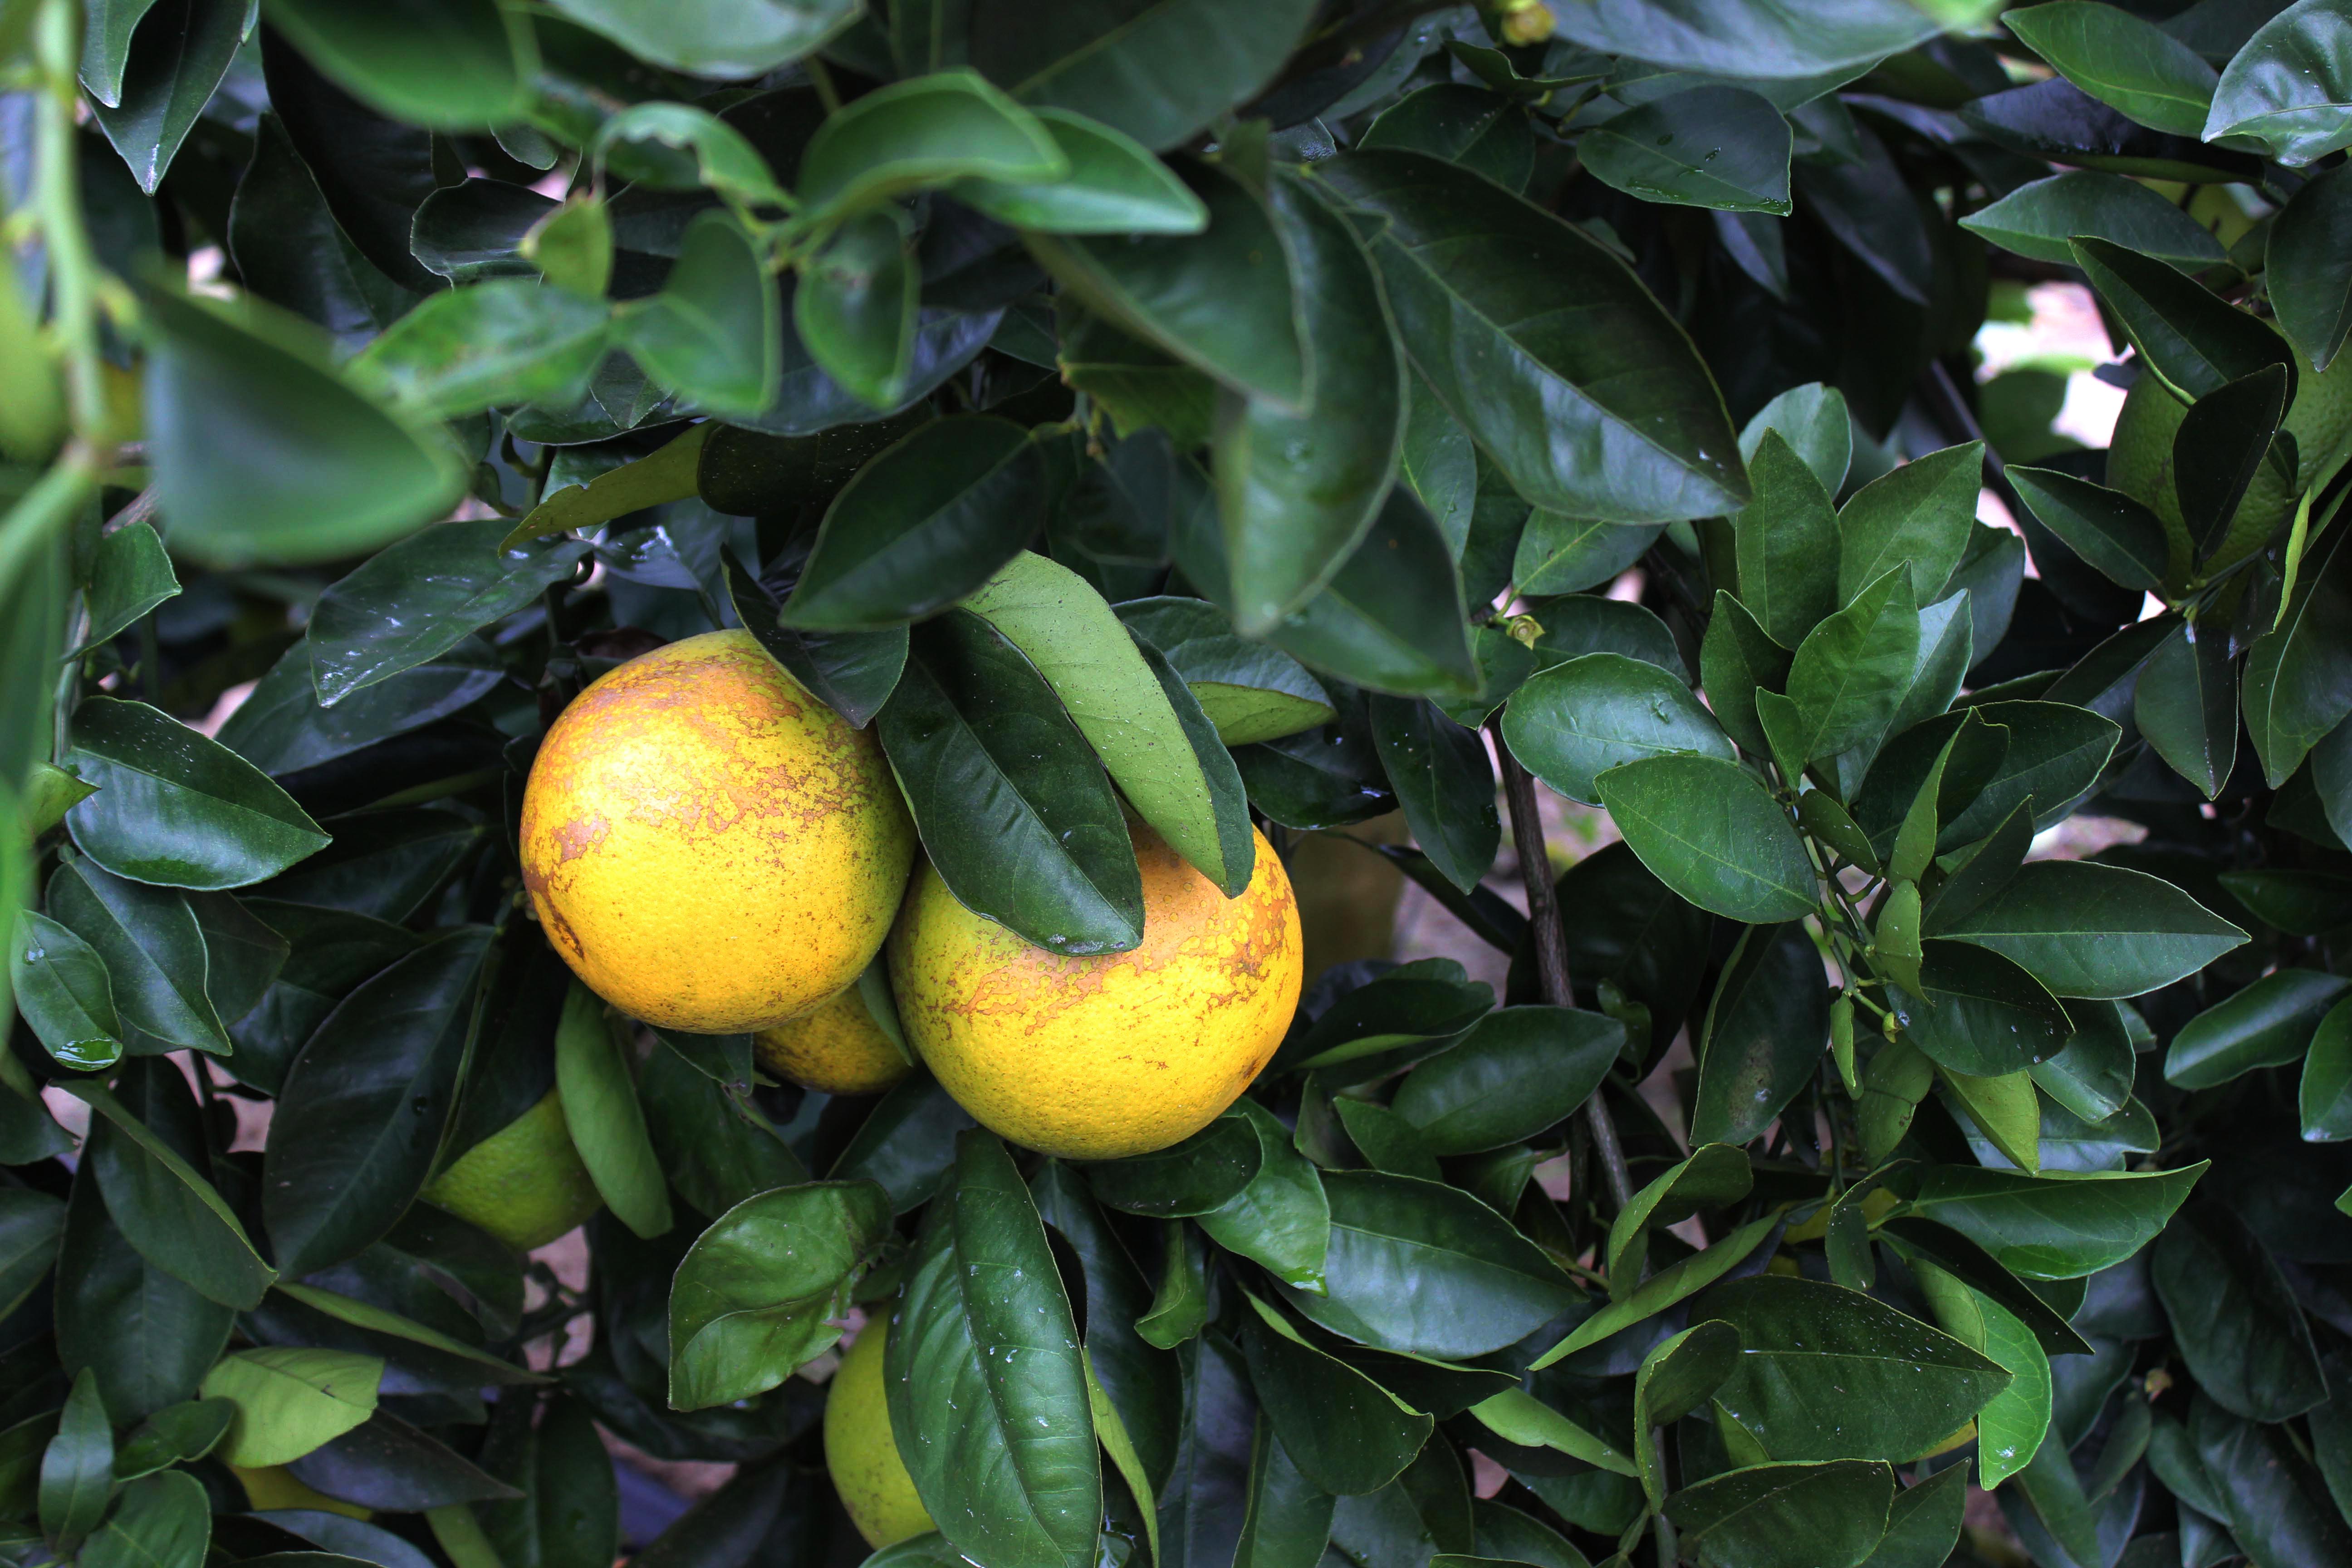 citrus greening